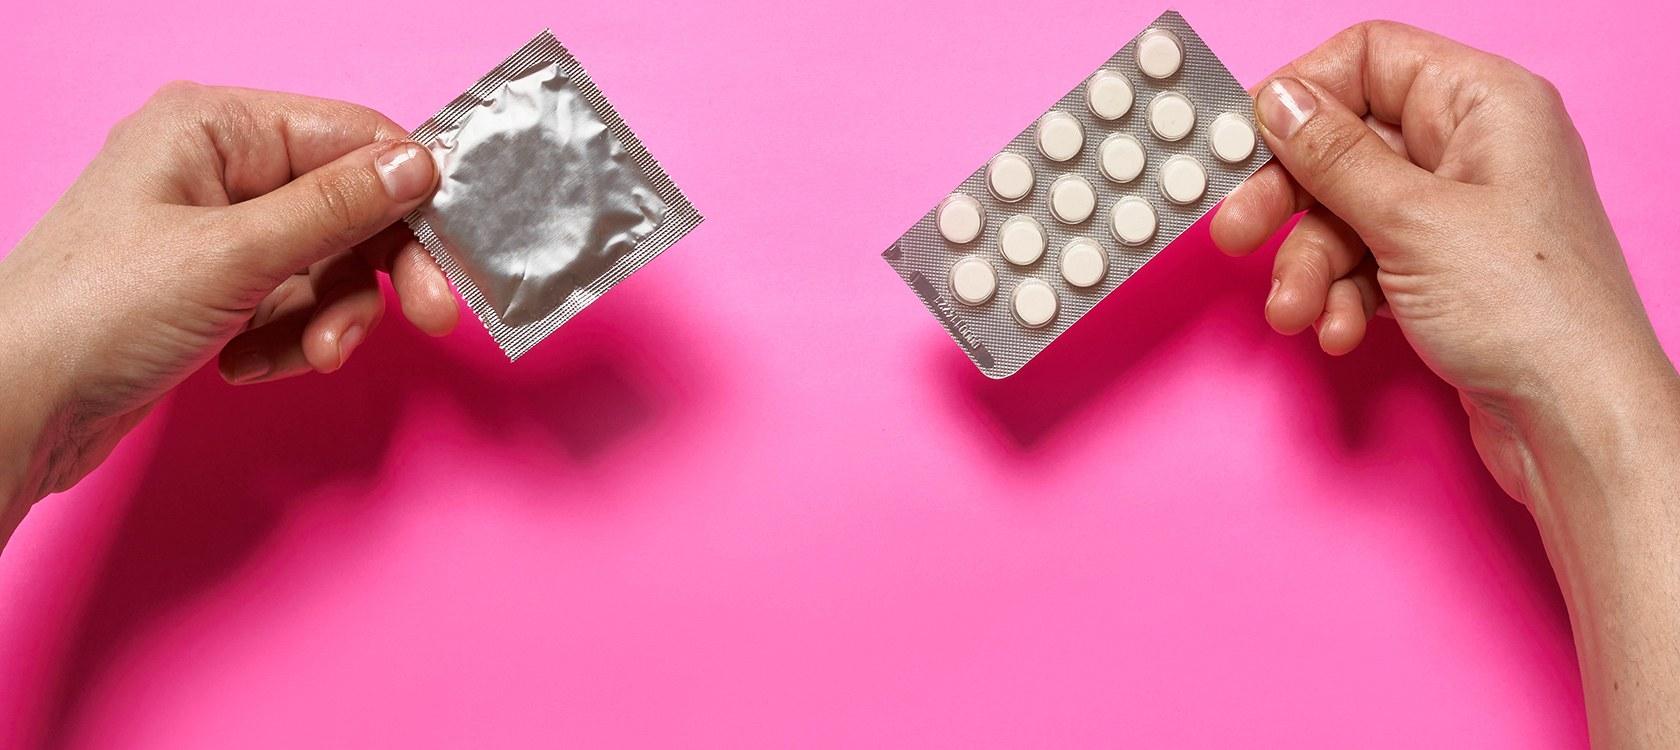 contraception marco verch flickr